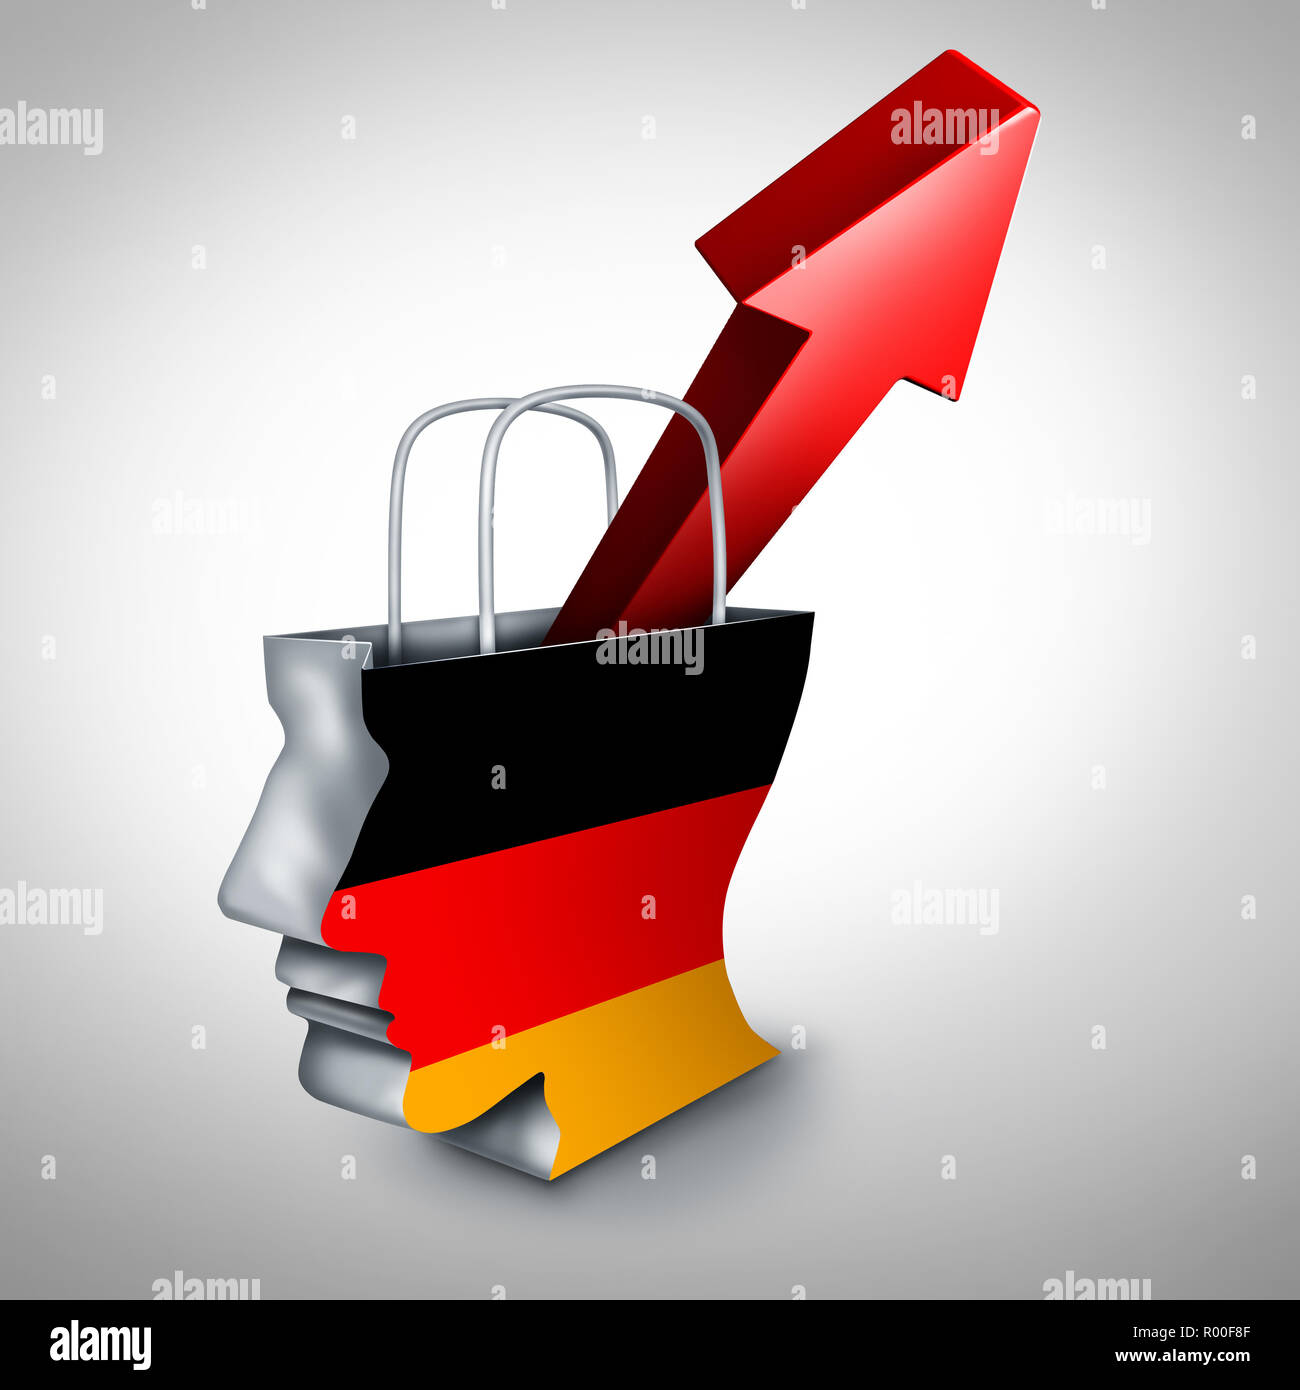 Deutschland Inflationsanstieg in einem boomenden Deutschen Wirtschaft und Finanz markt von Waren und Dienstleistungen oder Europäischen steigende Verbraucherpreise und wirtschaftlichen. Stockfoto